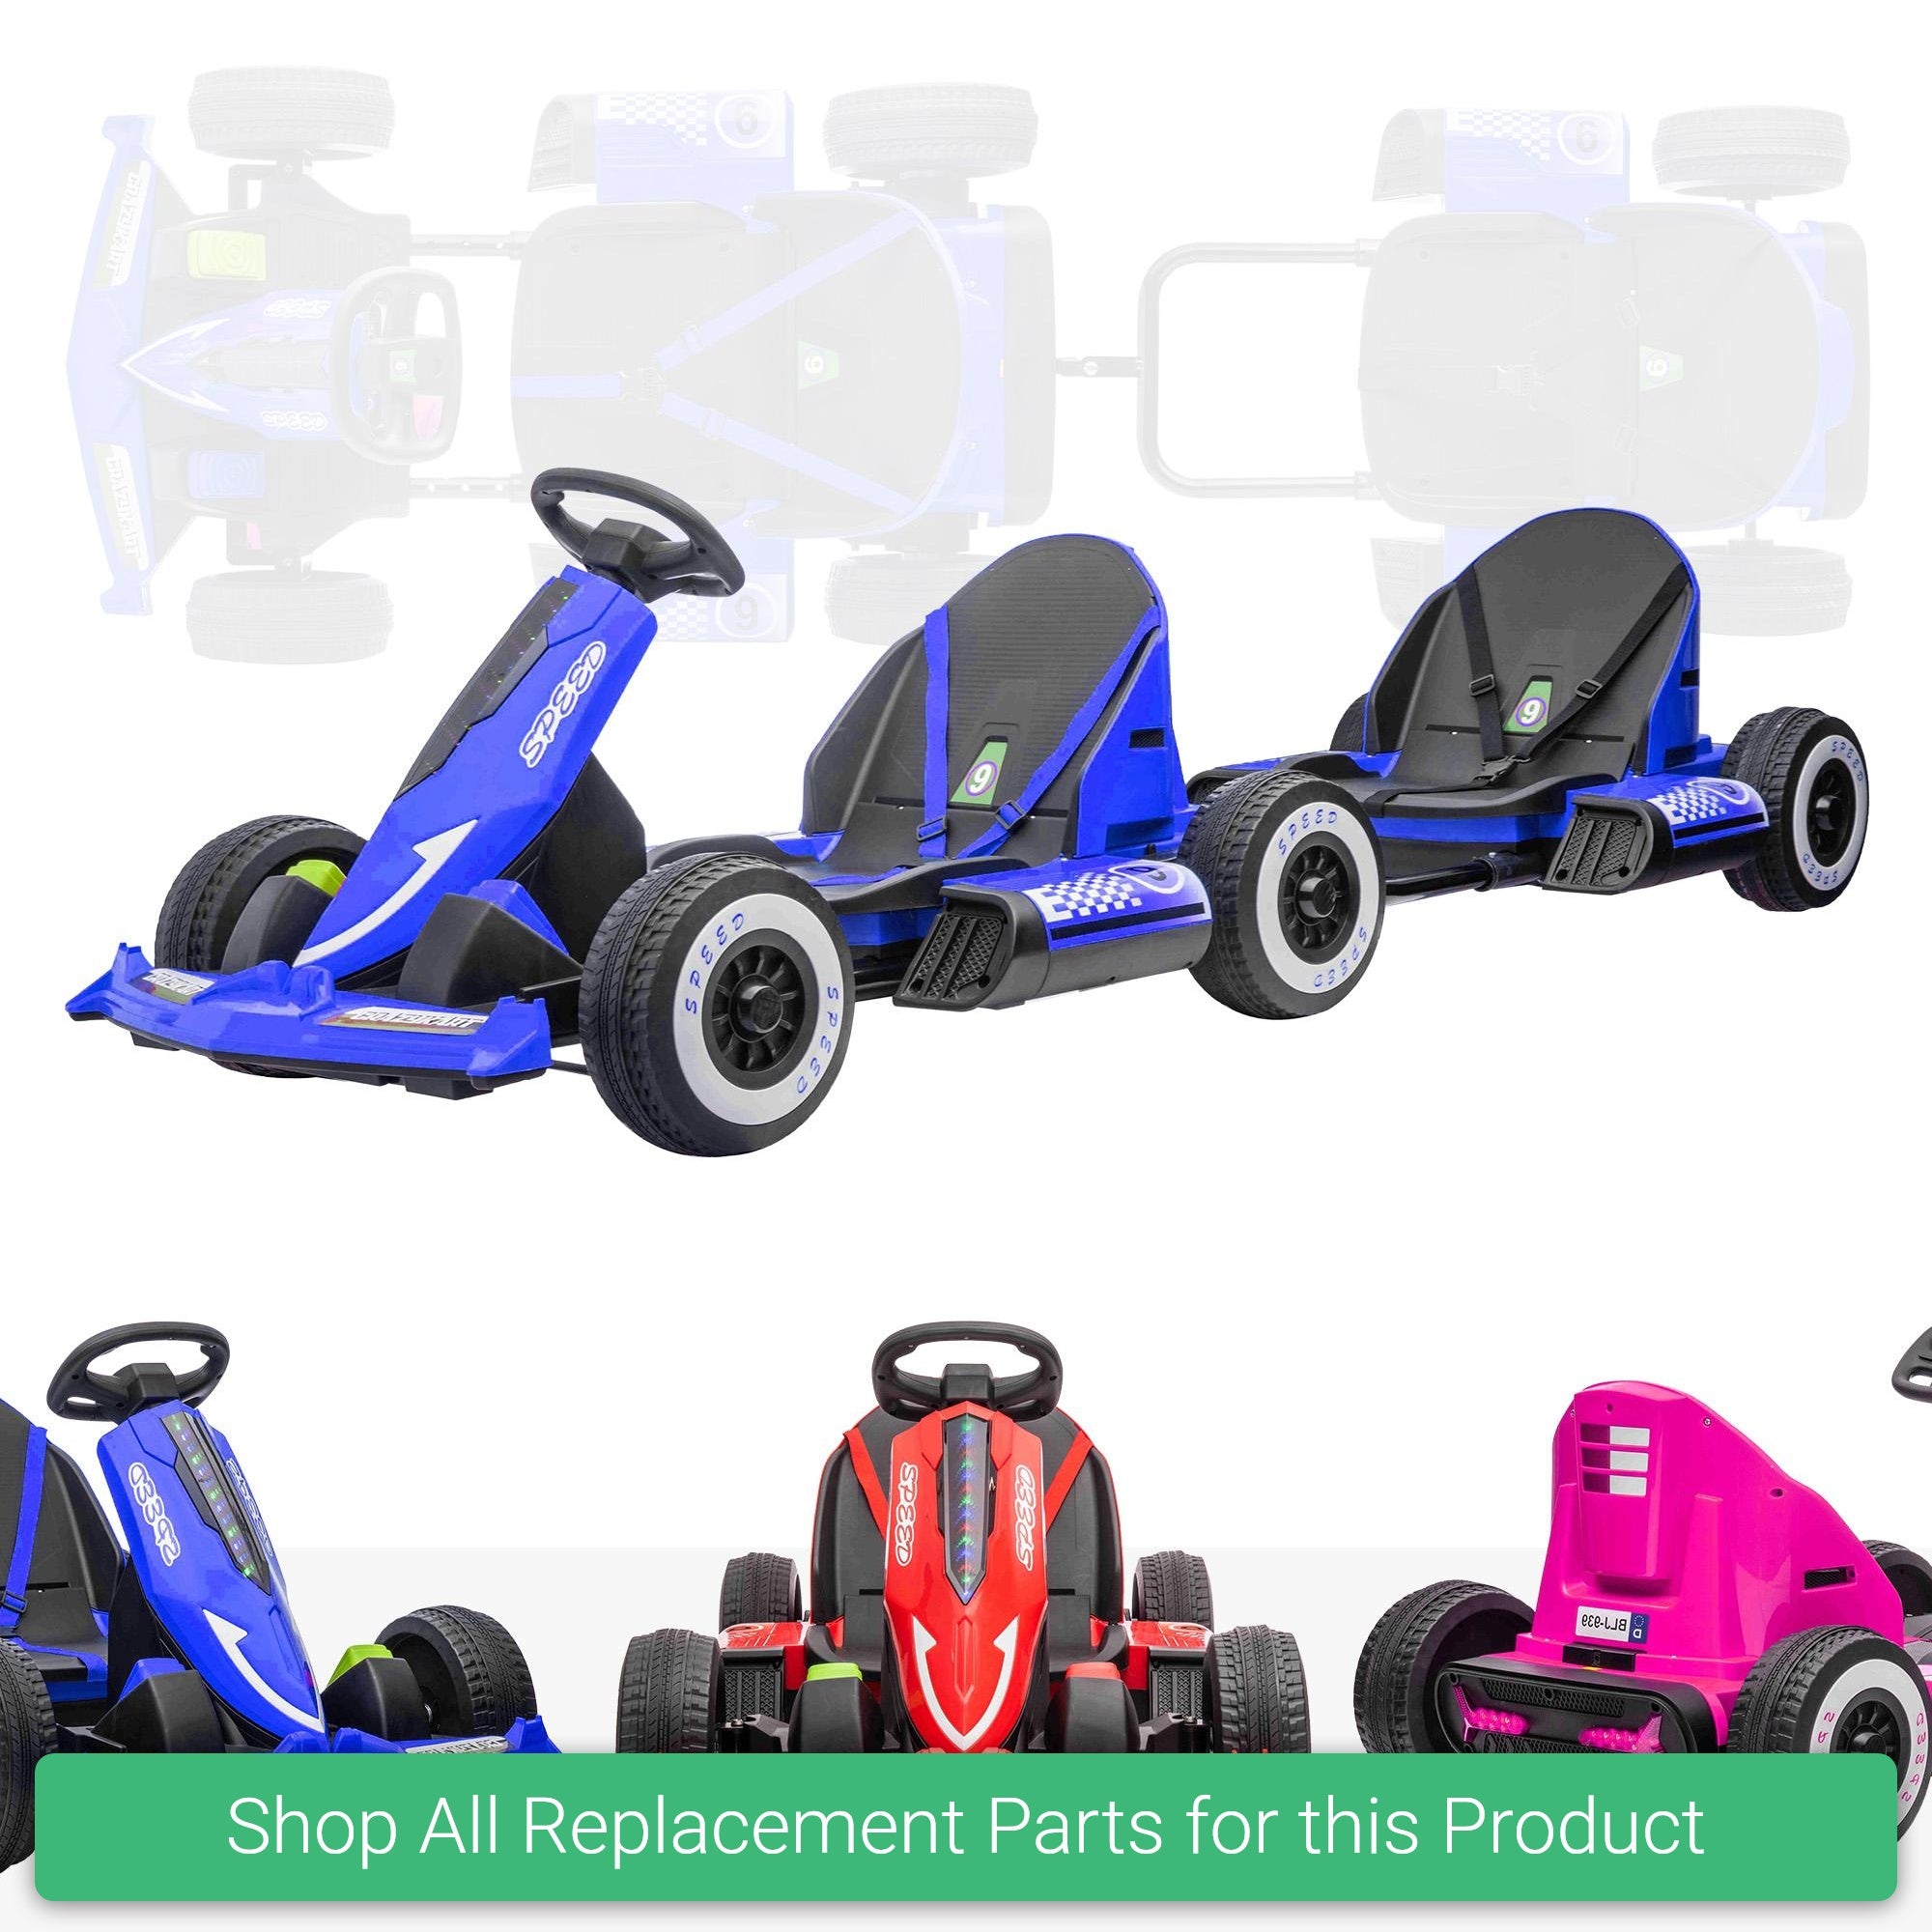 Replacement Parts and Spares for Kids 12V Go Kart & Trailer Bundle - KRT-12-BUNDLE-VARI - BLJ-939-BUND